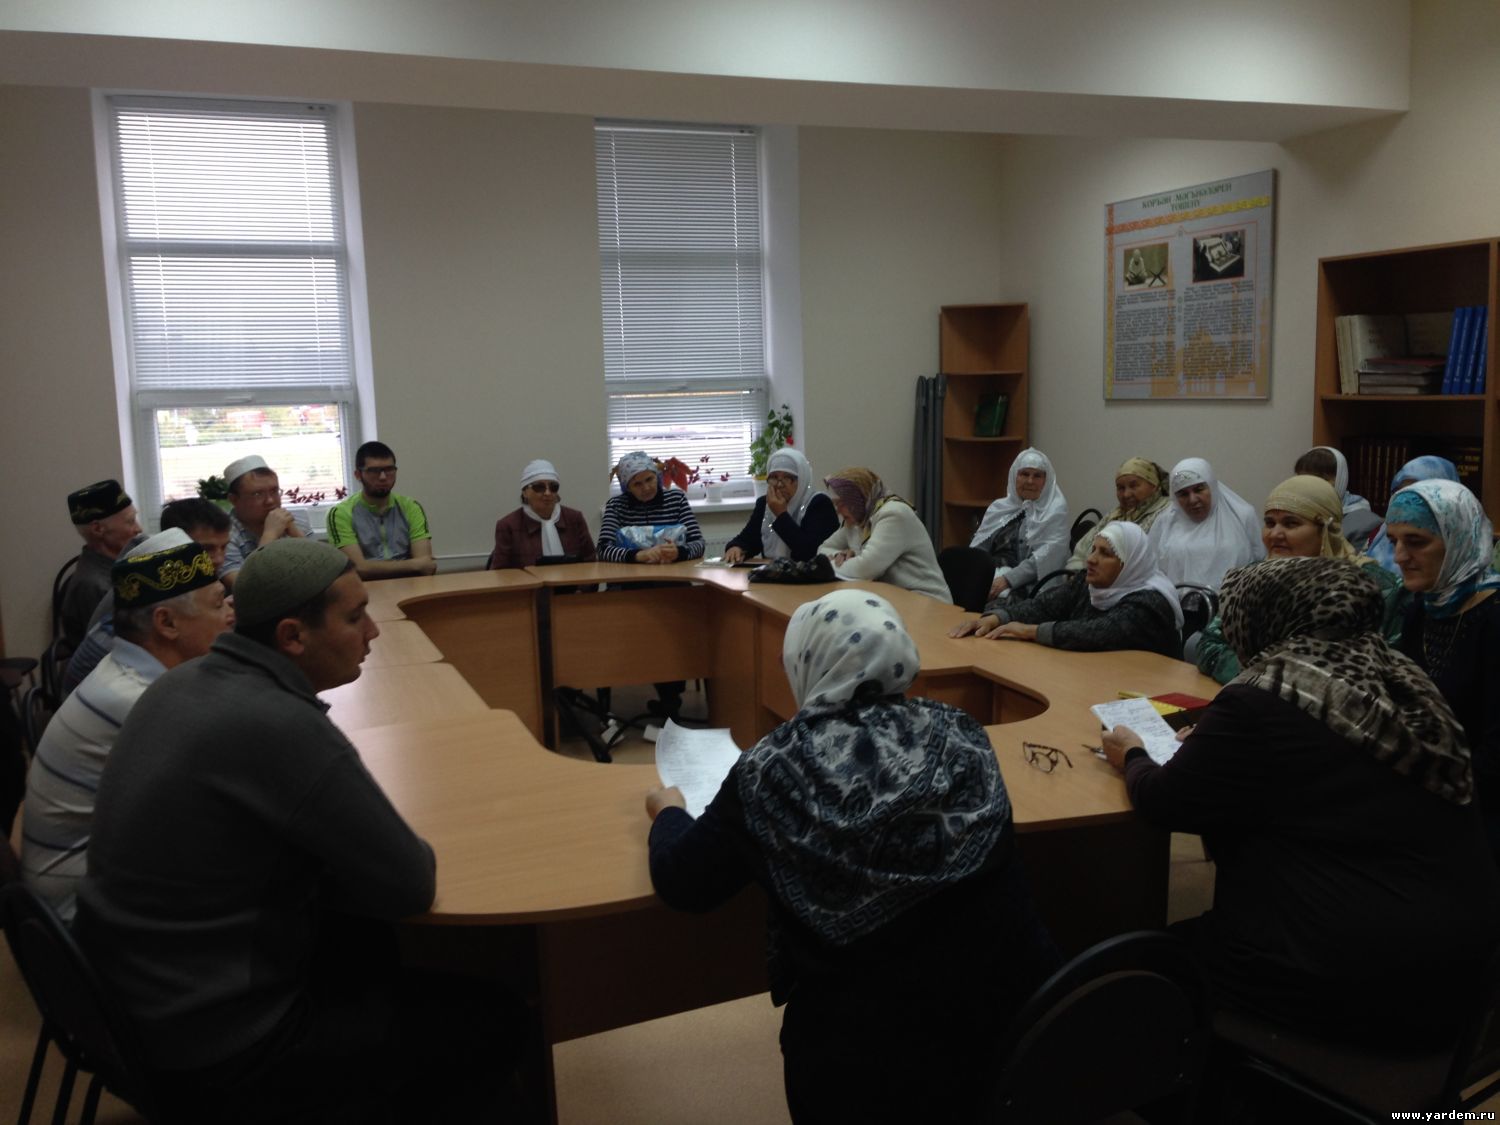 В мечети "Ярдэм" вновь начались курсы для незрячих. Курсы для незрячих